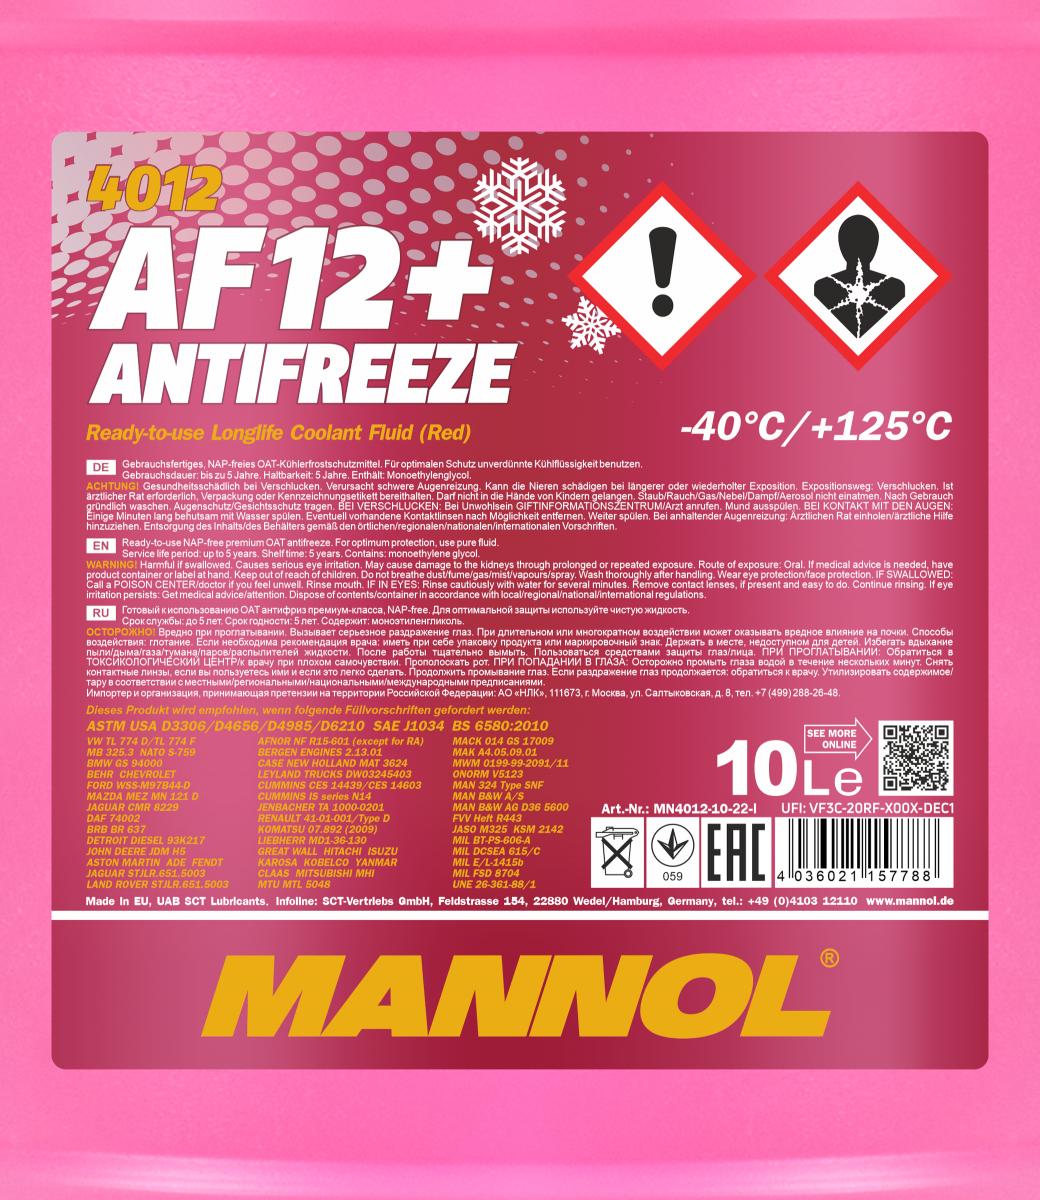 MN Antifreeze AF 12+ (-40) Longlife